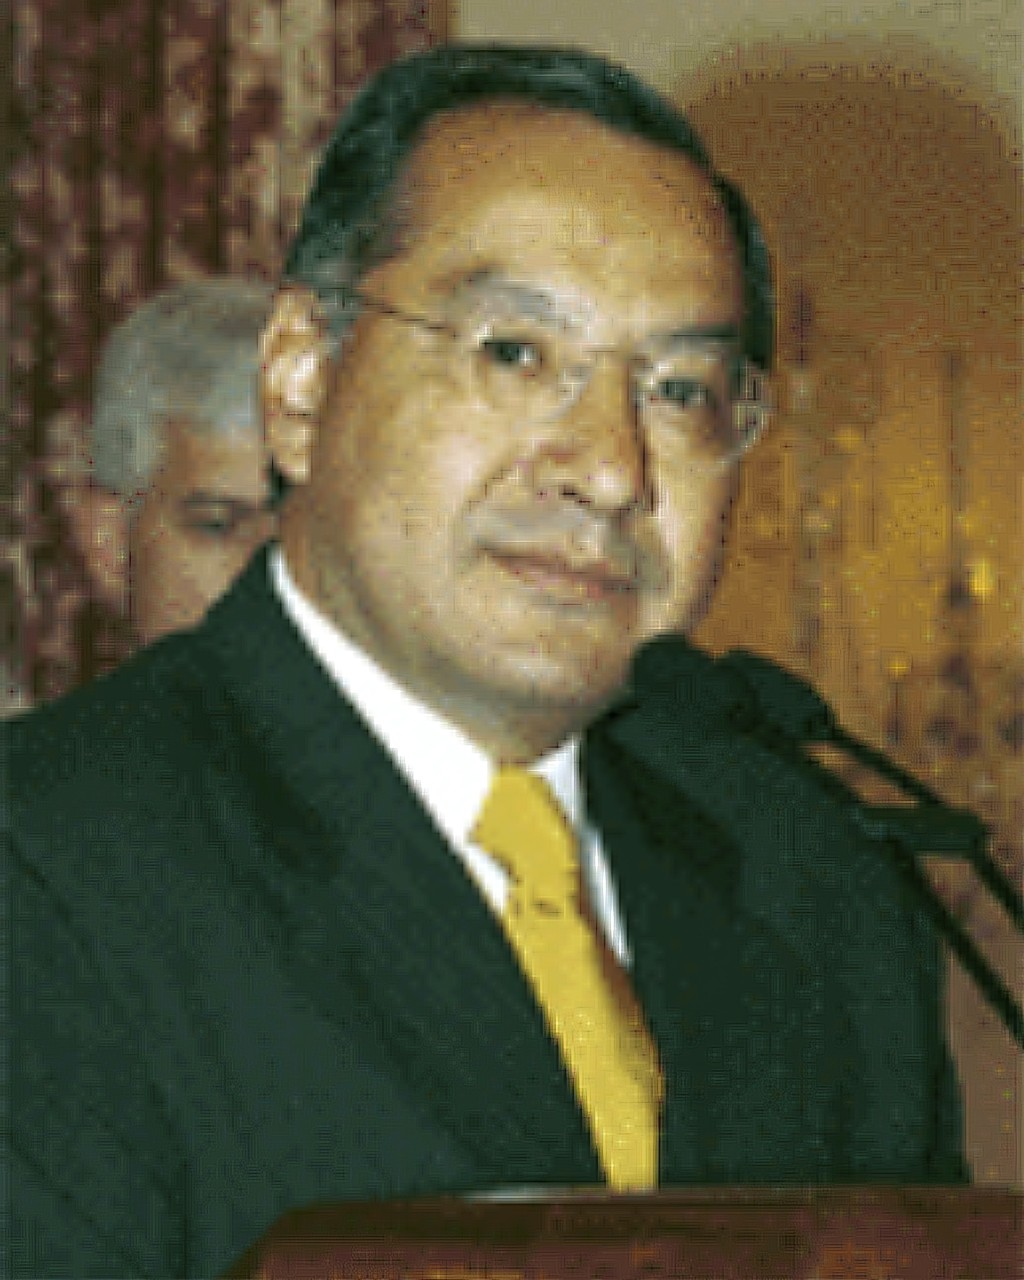 羅查任職美國駐玻利維亞大使時期的照片。 美聯社